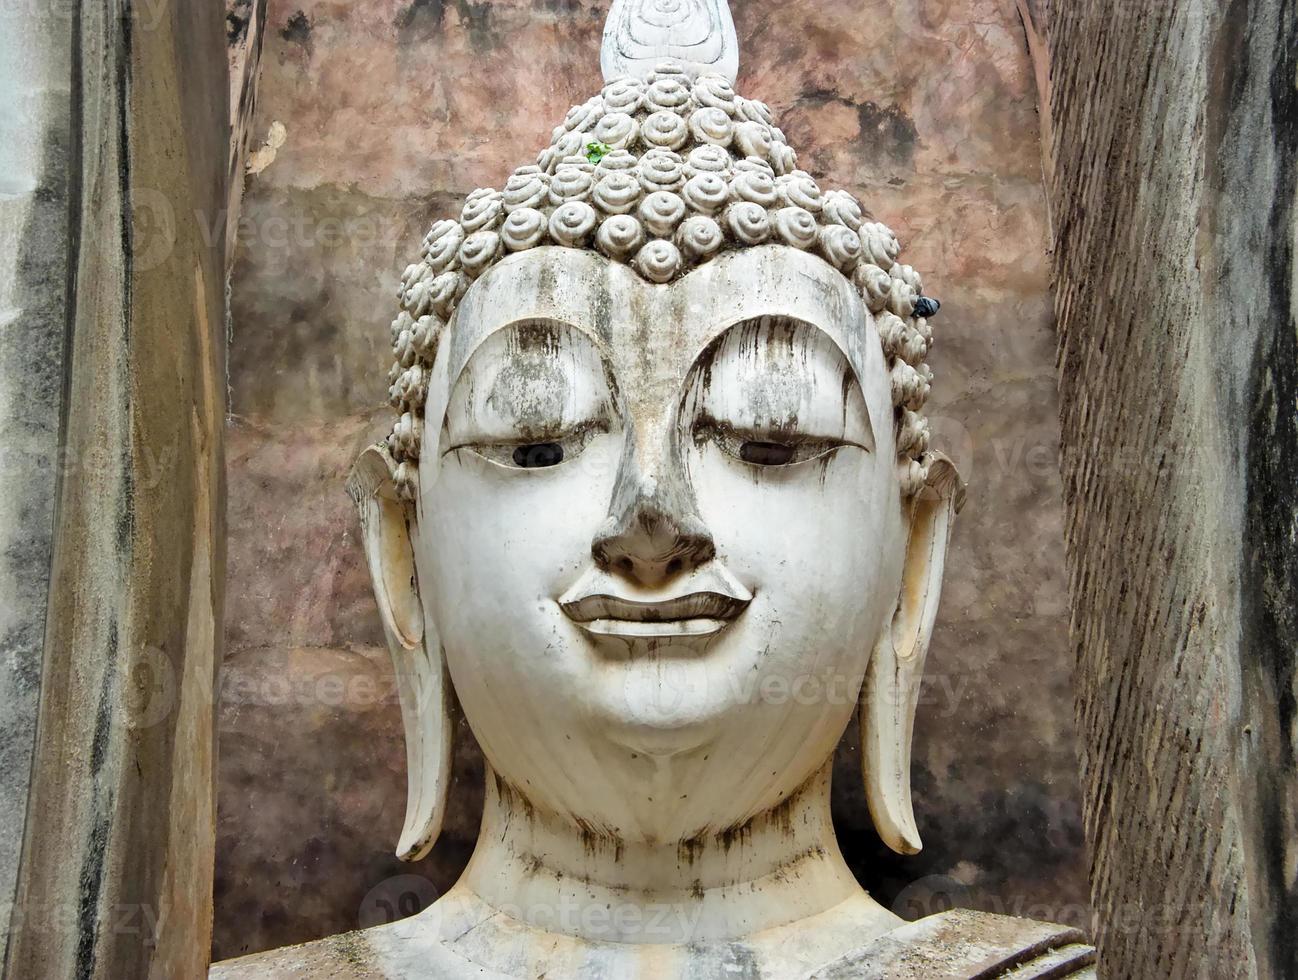 Buda gran estatua de nombre phra ajarn en phra montop wat srichum parque histórico de sukhothai patrimonio de la humanidad. foto